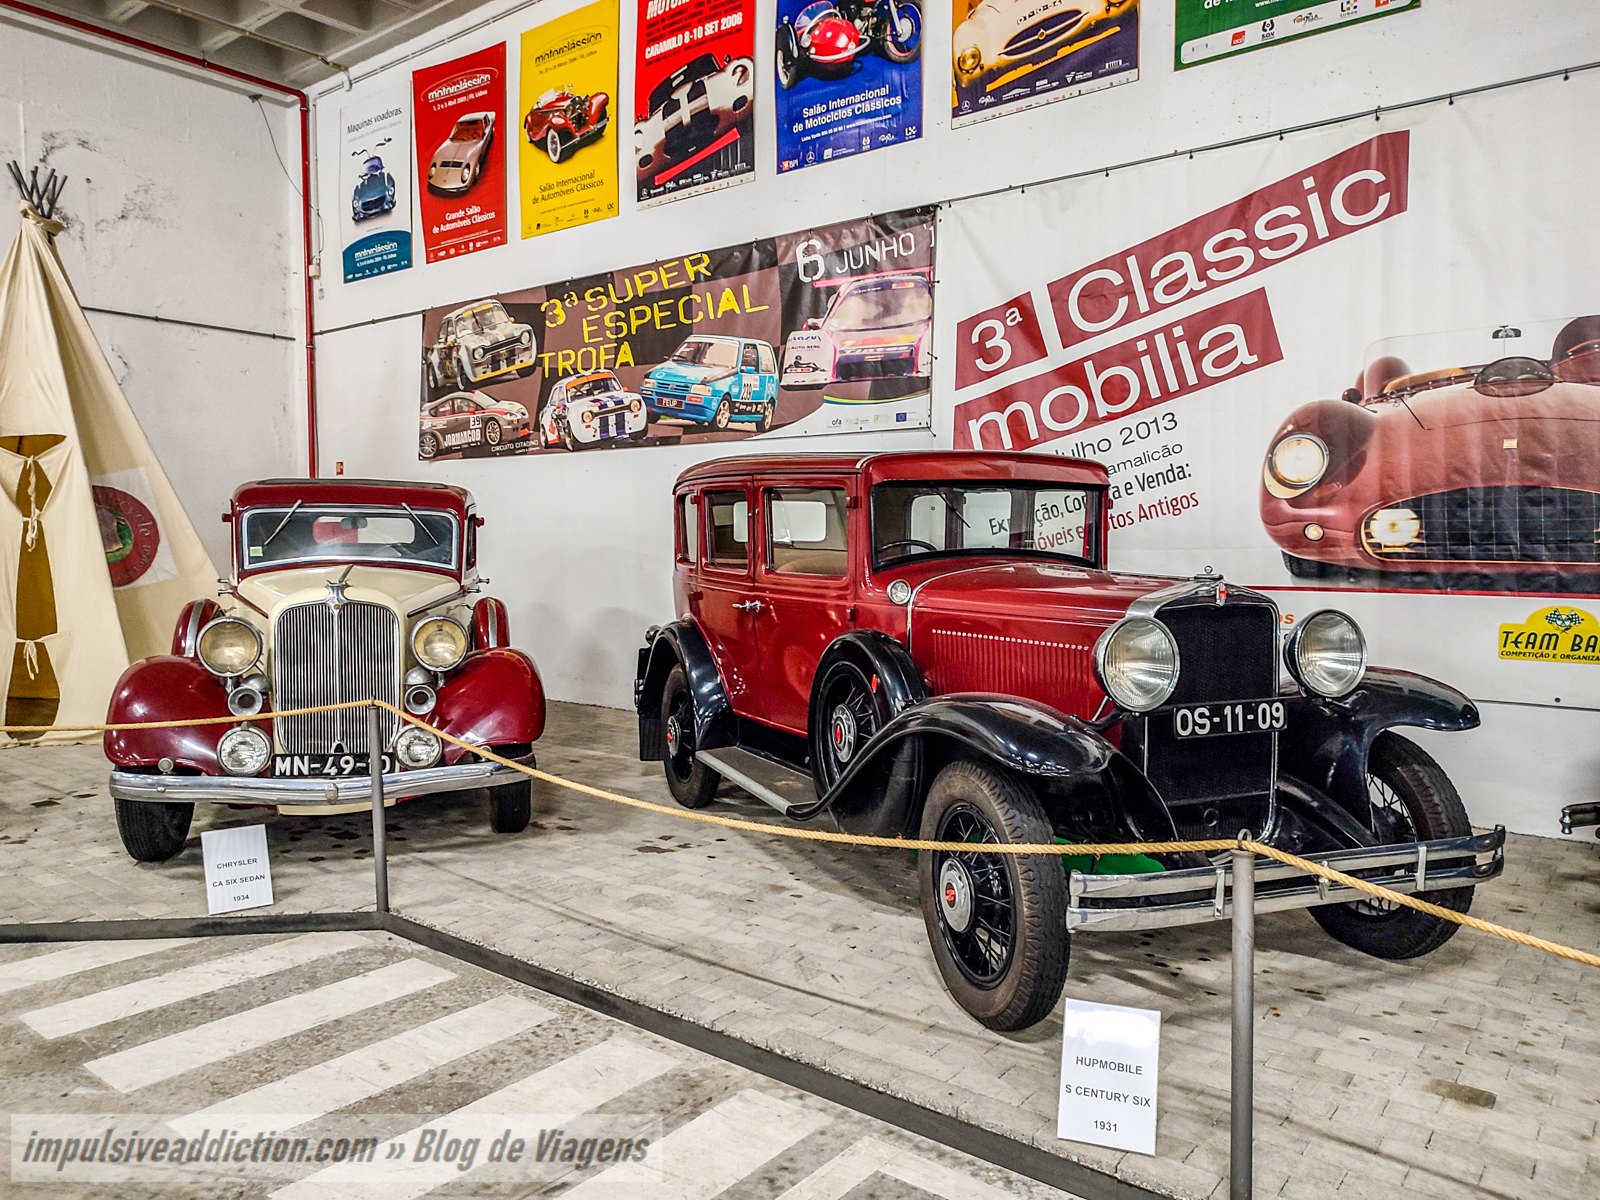 Museu do Automóvel de Vila Nova de Famalicão